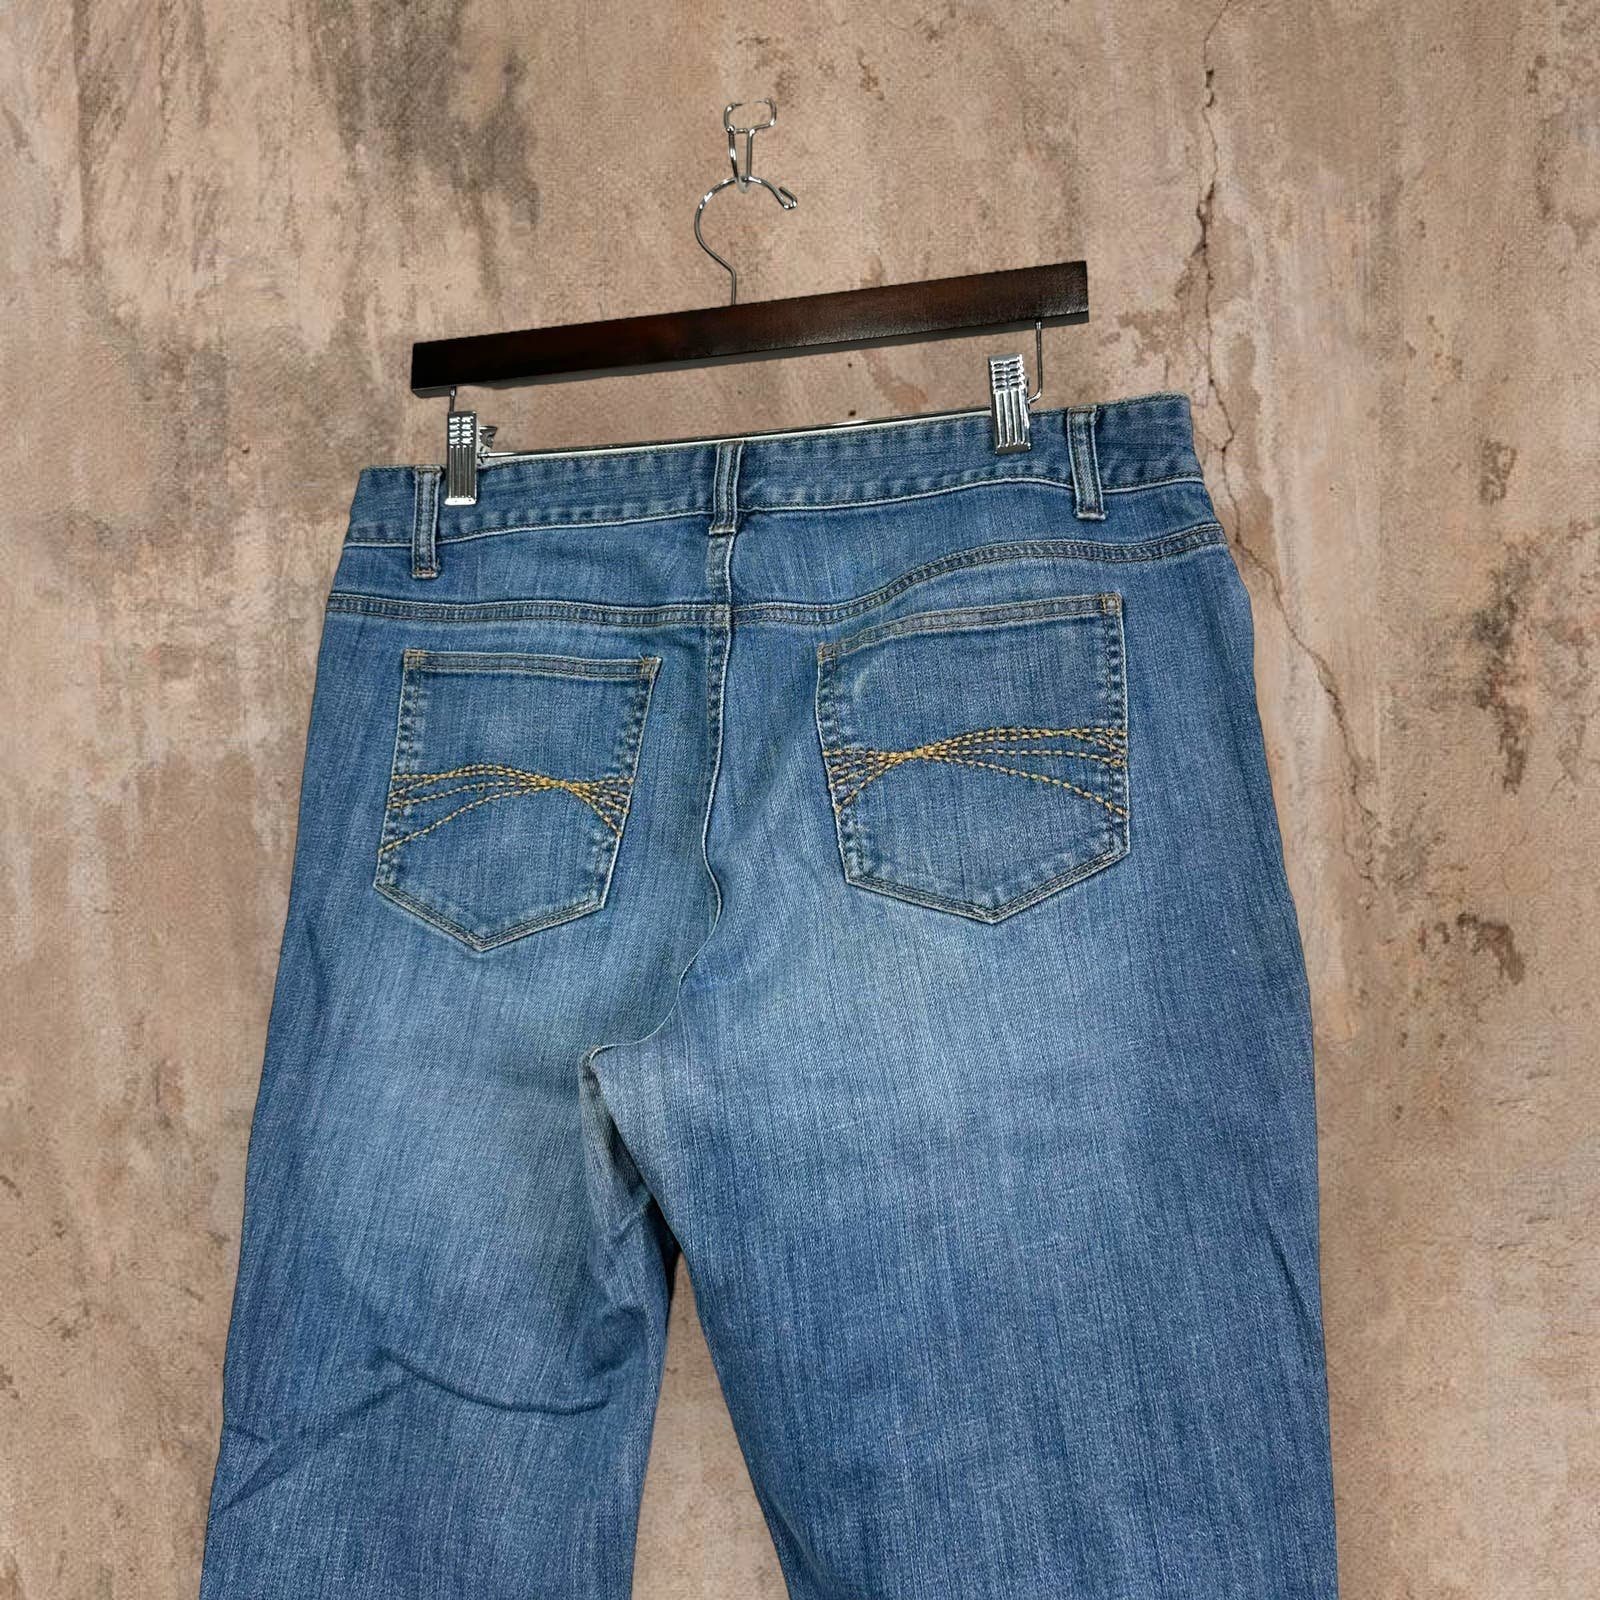 Fashion Tommy Hilfiger Flared Jeans Medium Wash Denim f